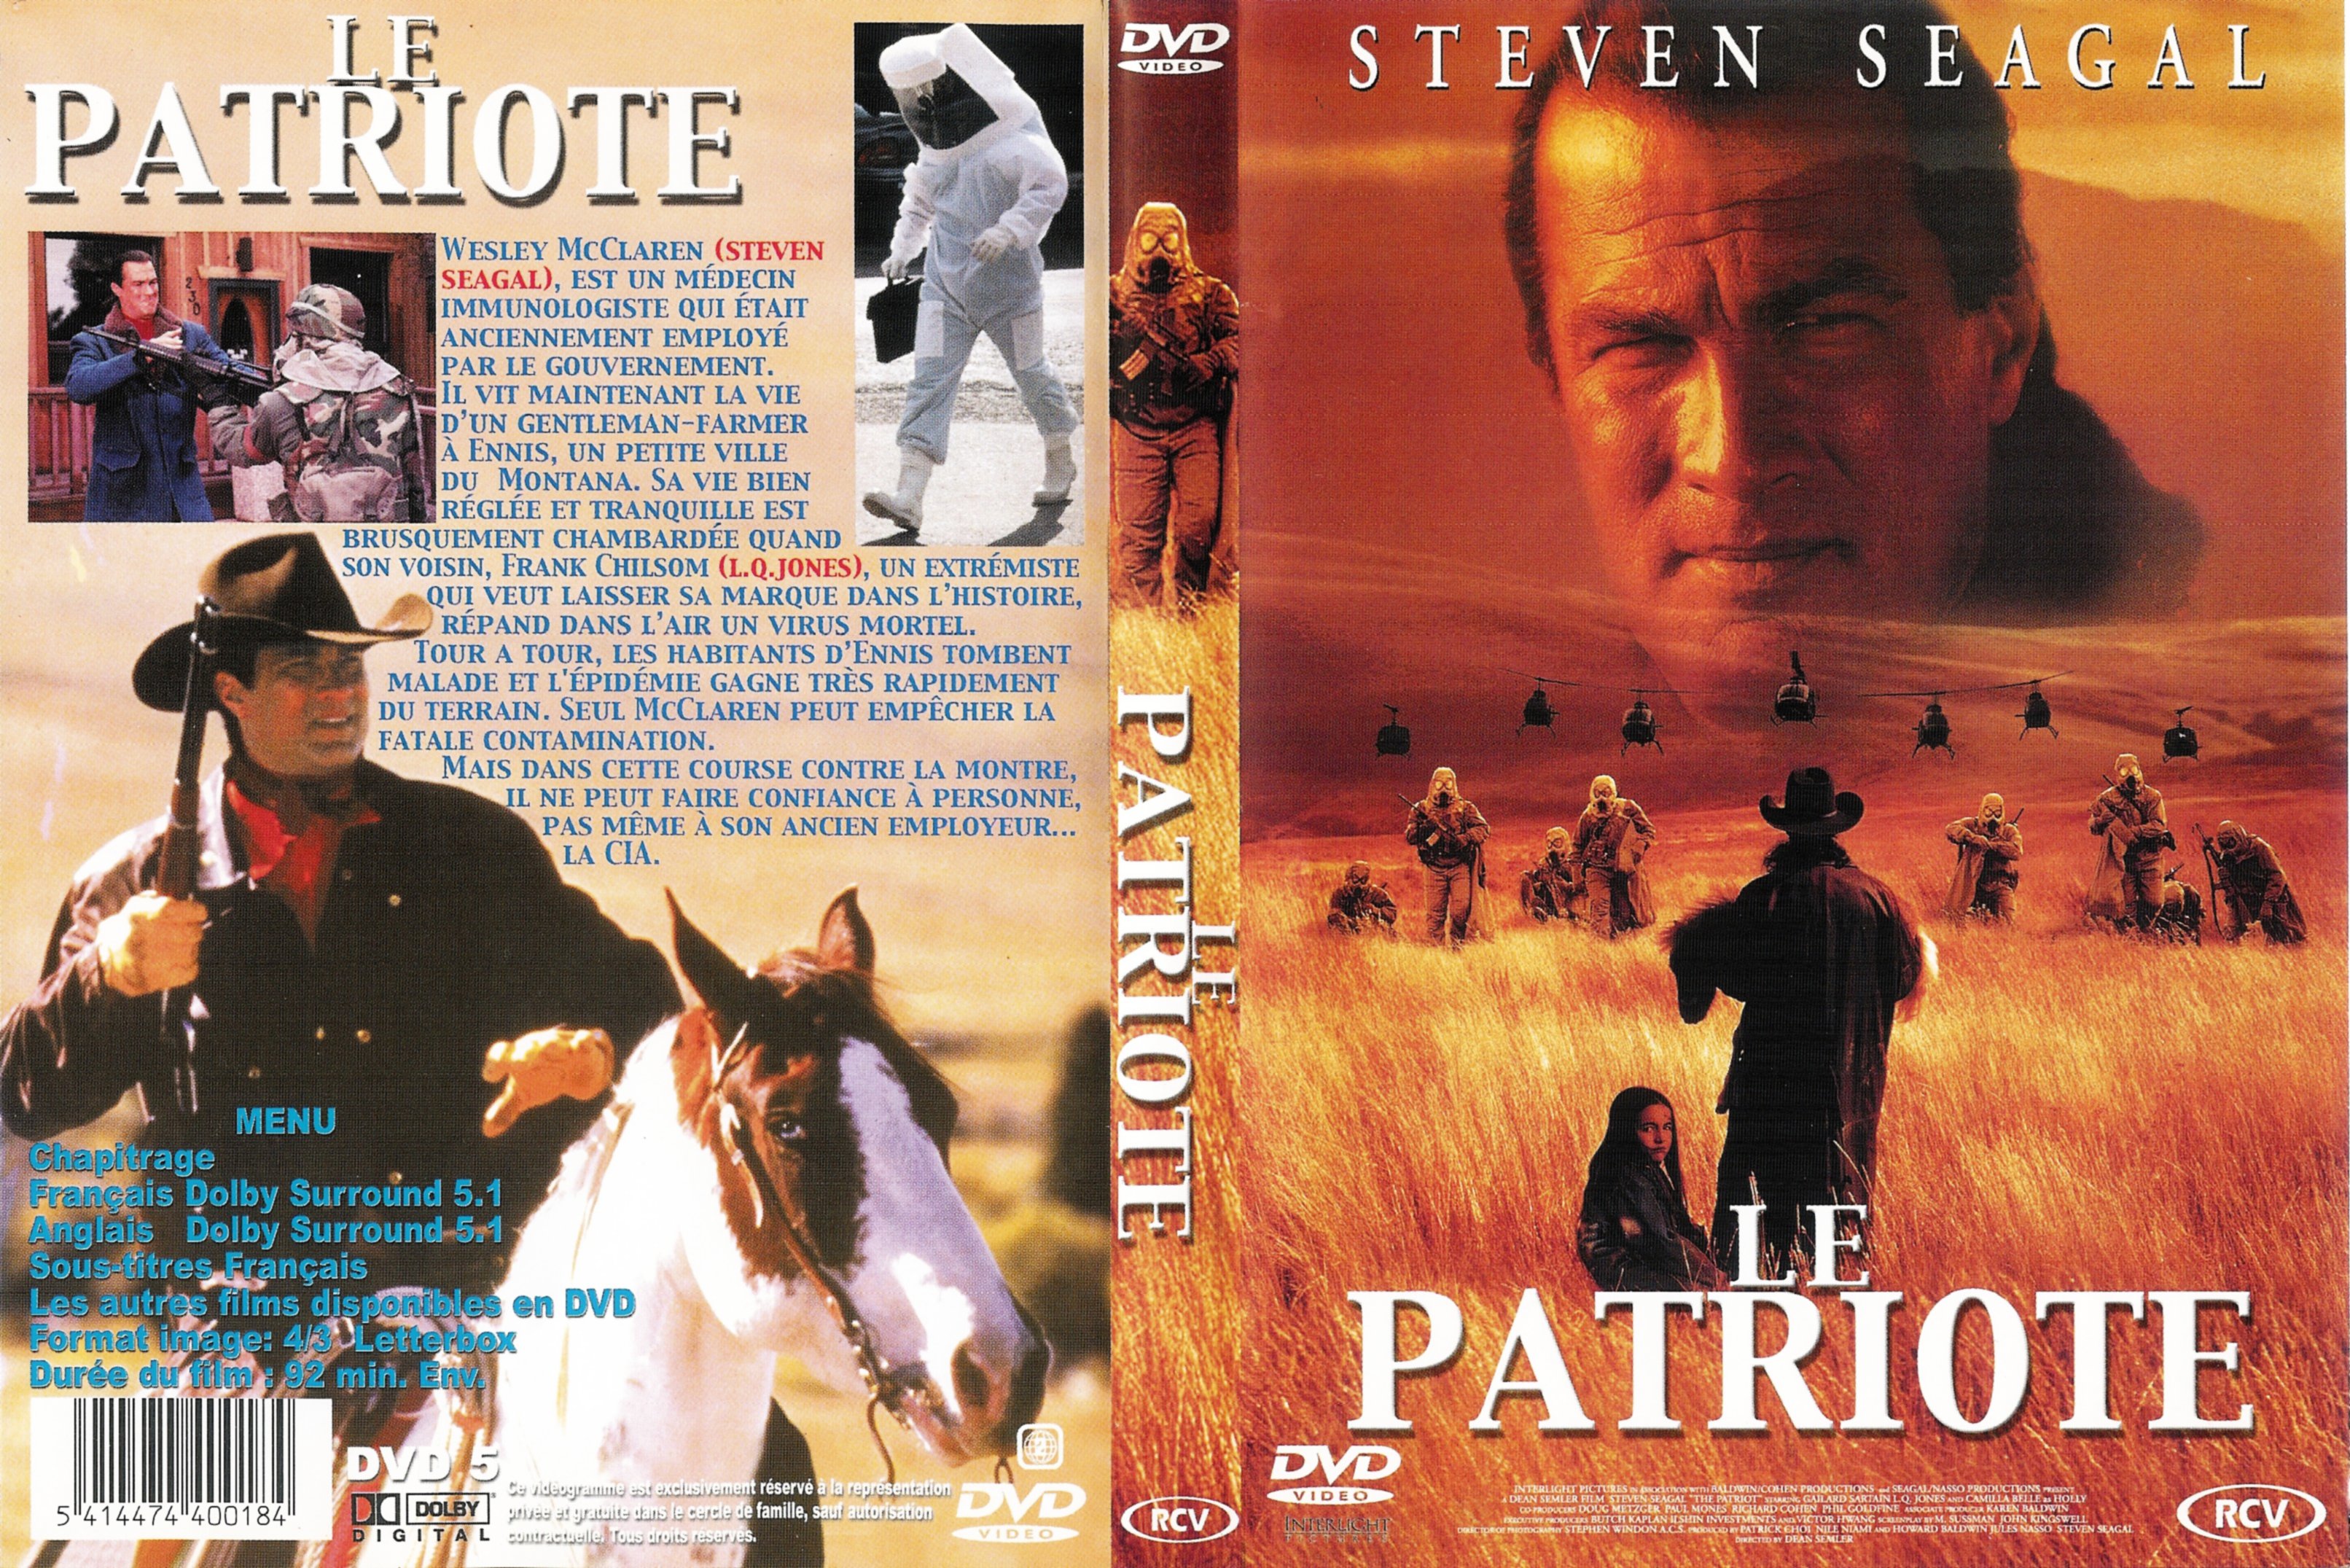 Jaquette DVD Le patriote v2